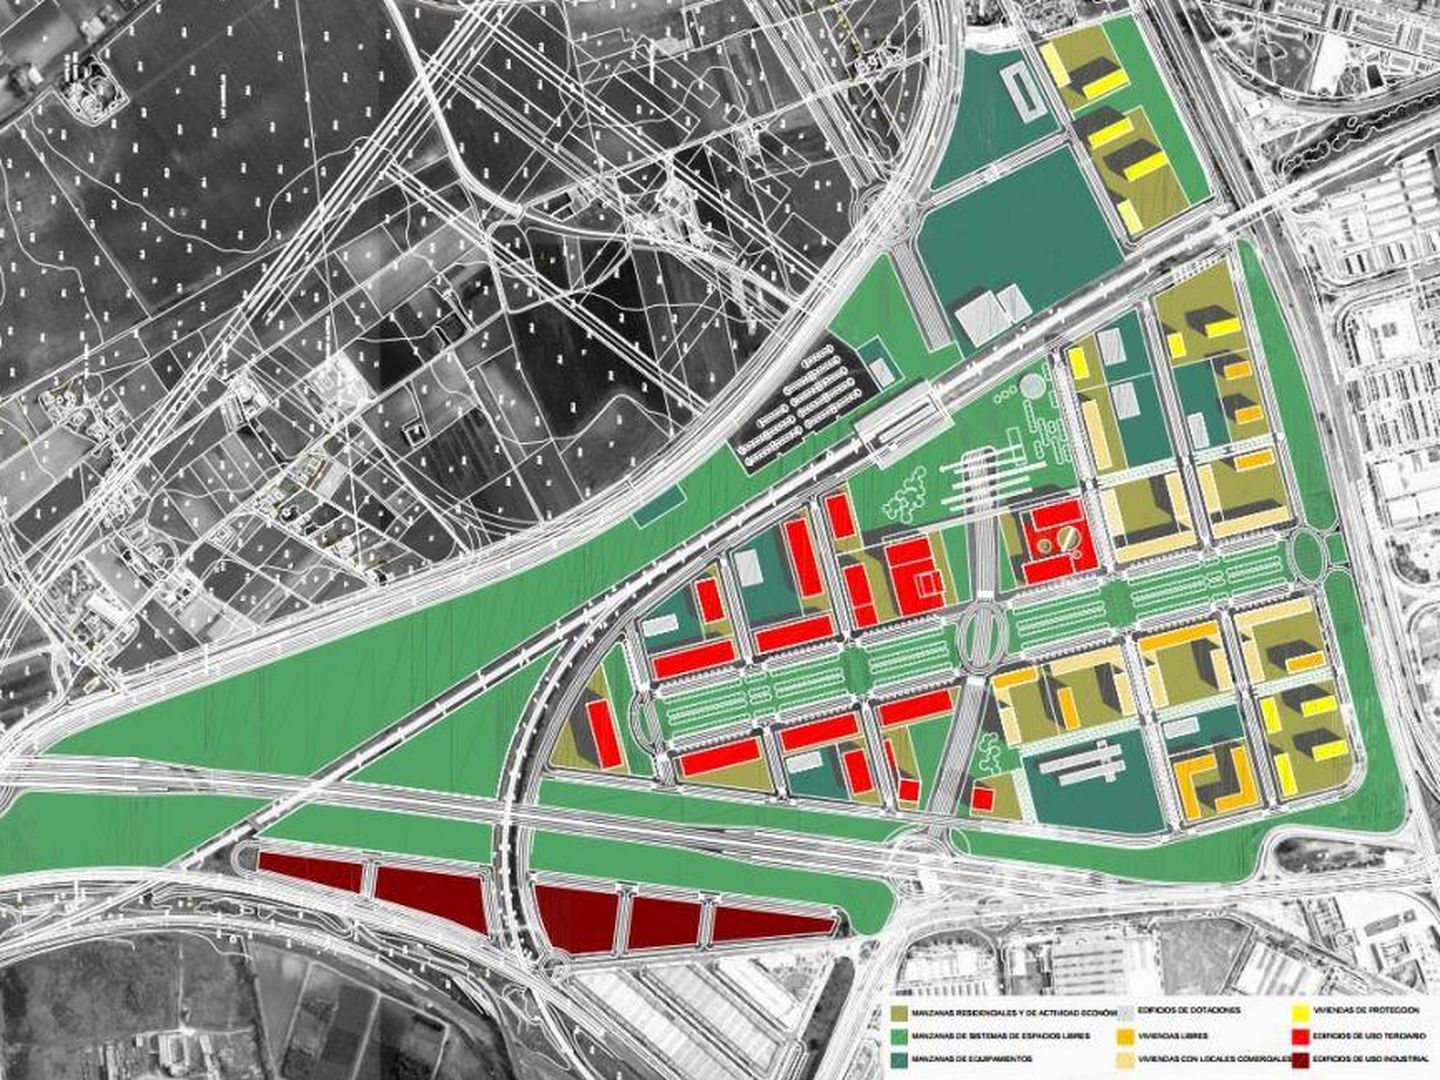 Imagen del desarrollo urbanístico propuesto sobre Buen Aire, con la autovía A4 a la derecha. (Andaluciainformacion.es)